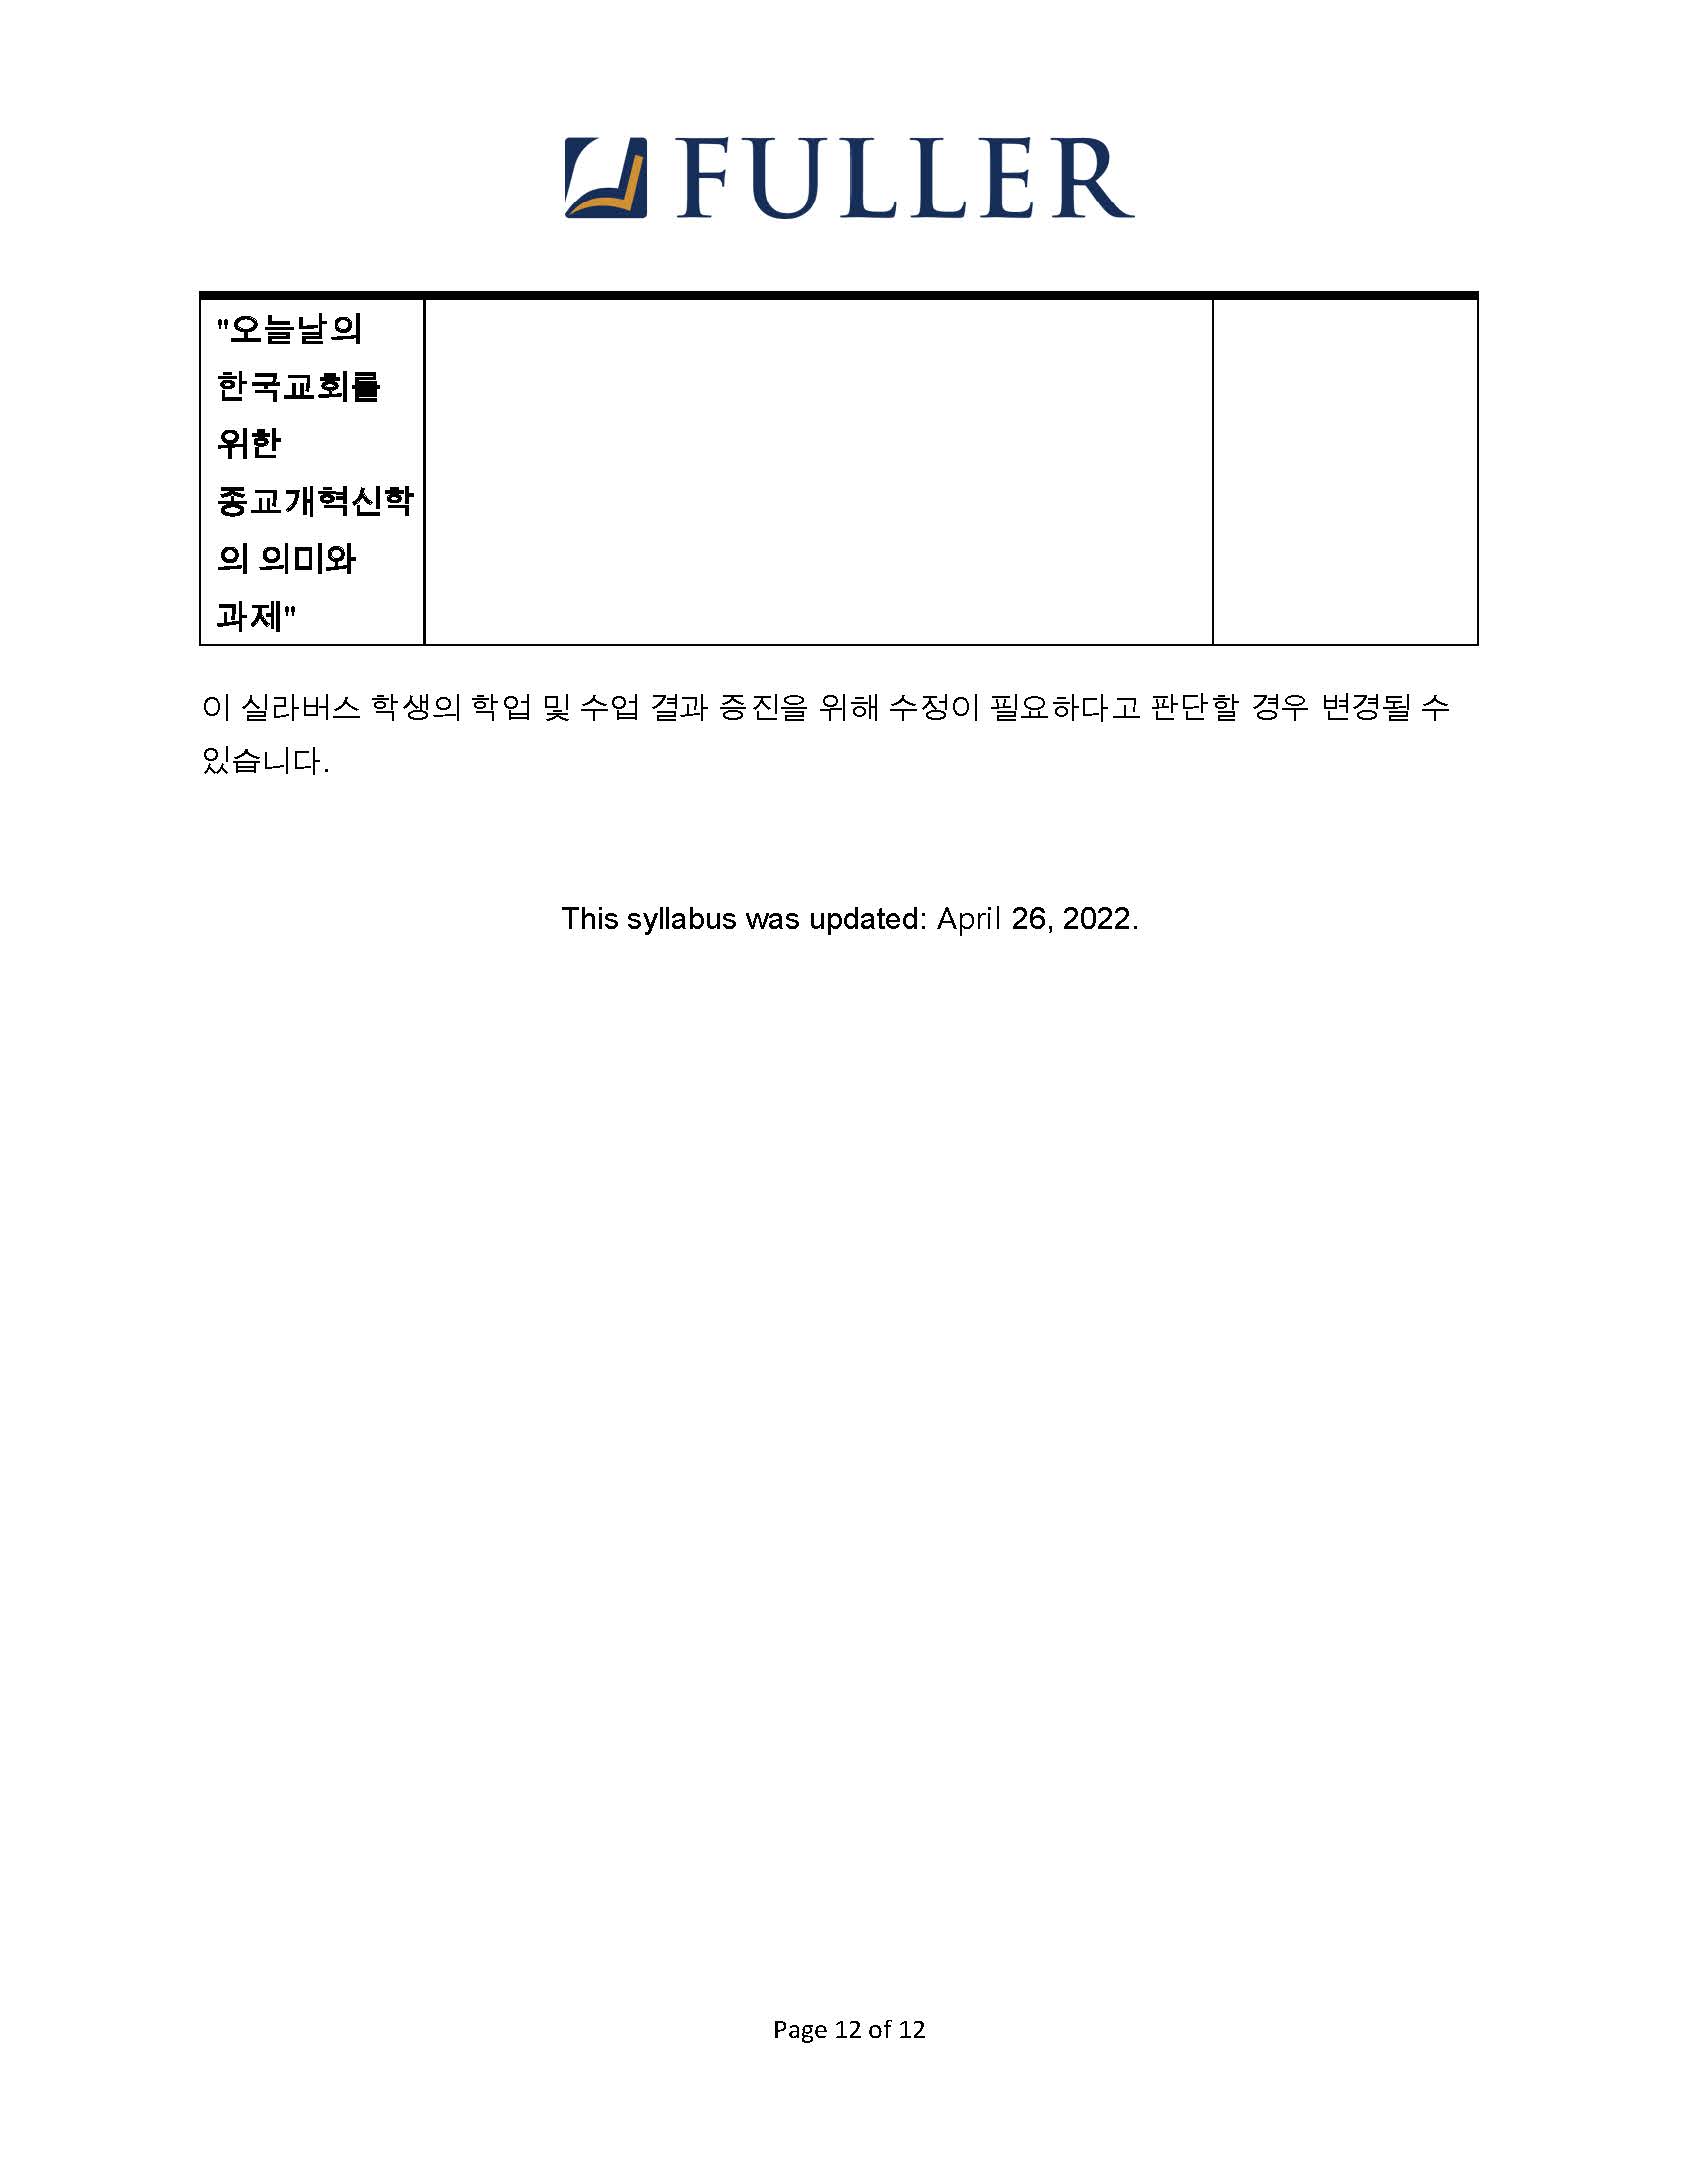 CH743 Syllabus (Korean) (1)_Page_12.jpg